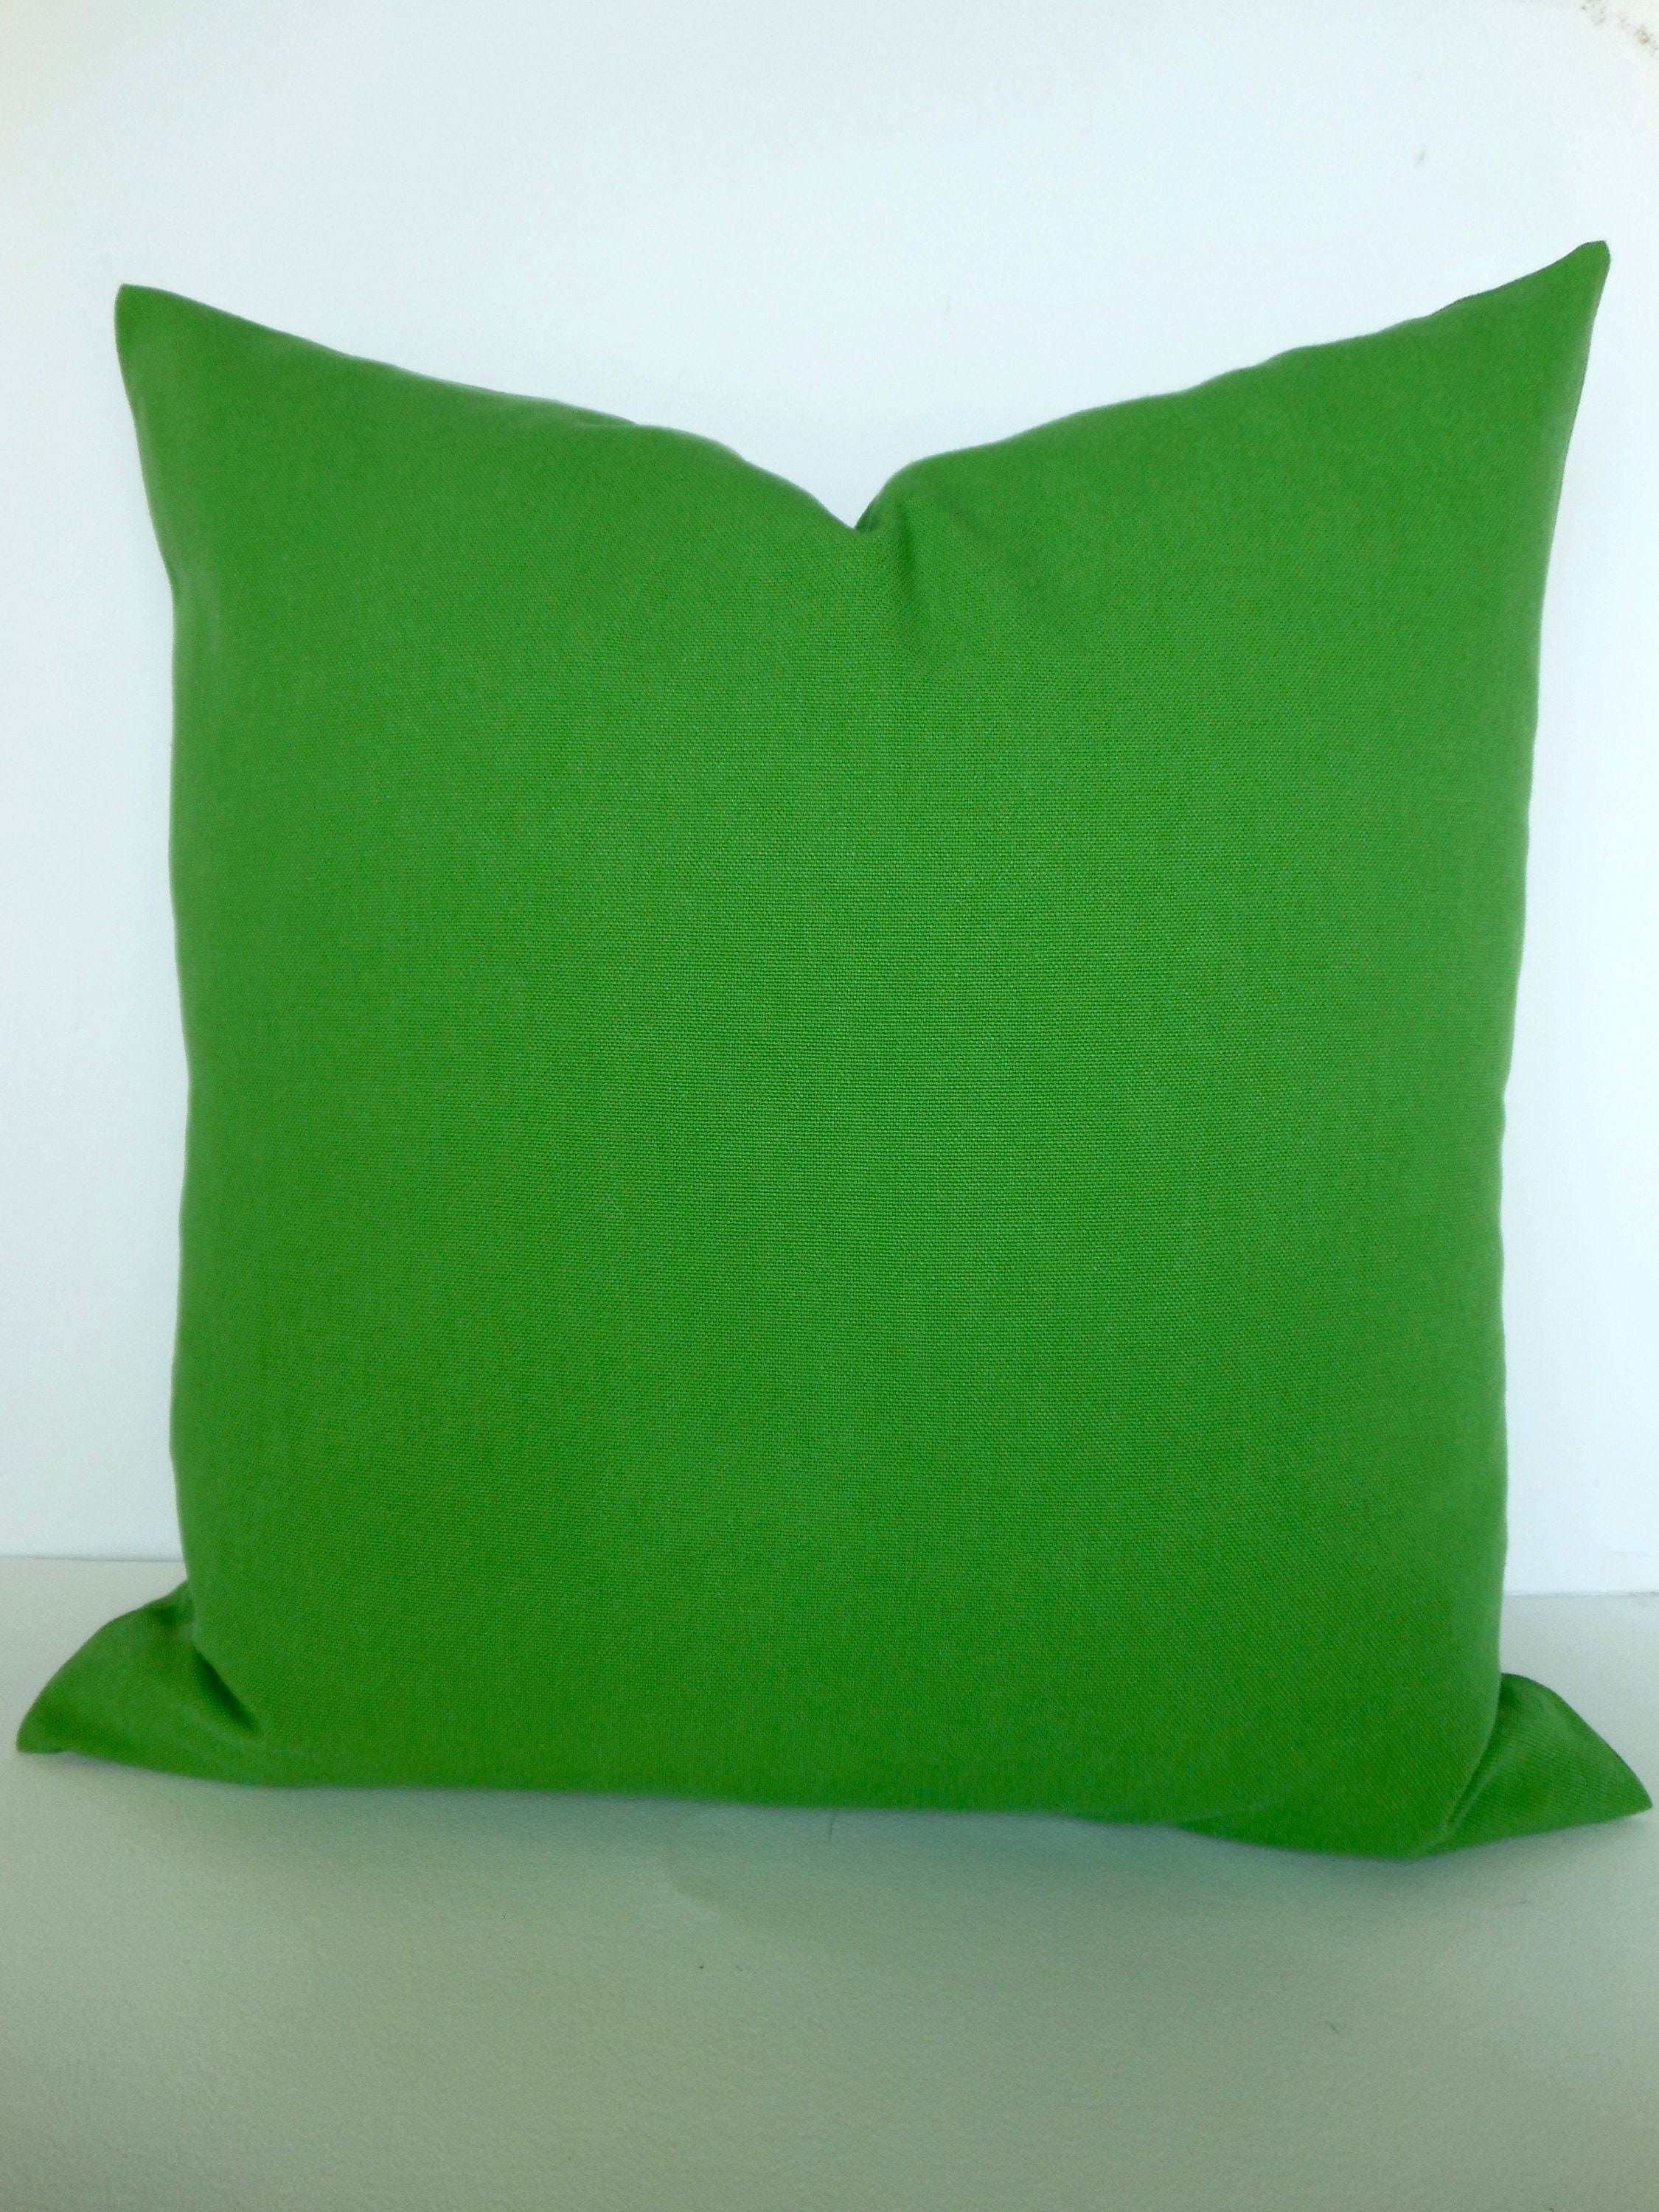 GREEN PILLOWS Solid Green Throw Pillow 